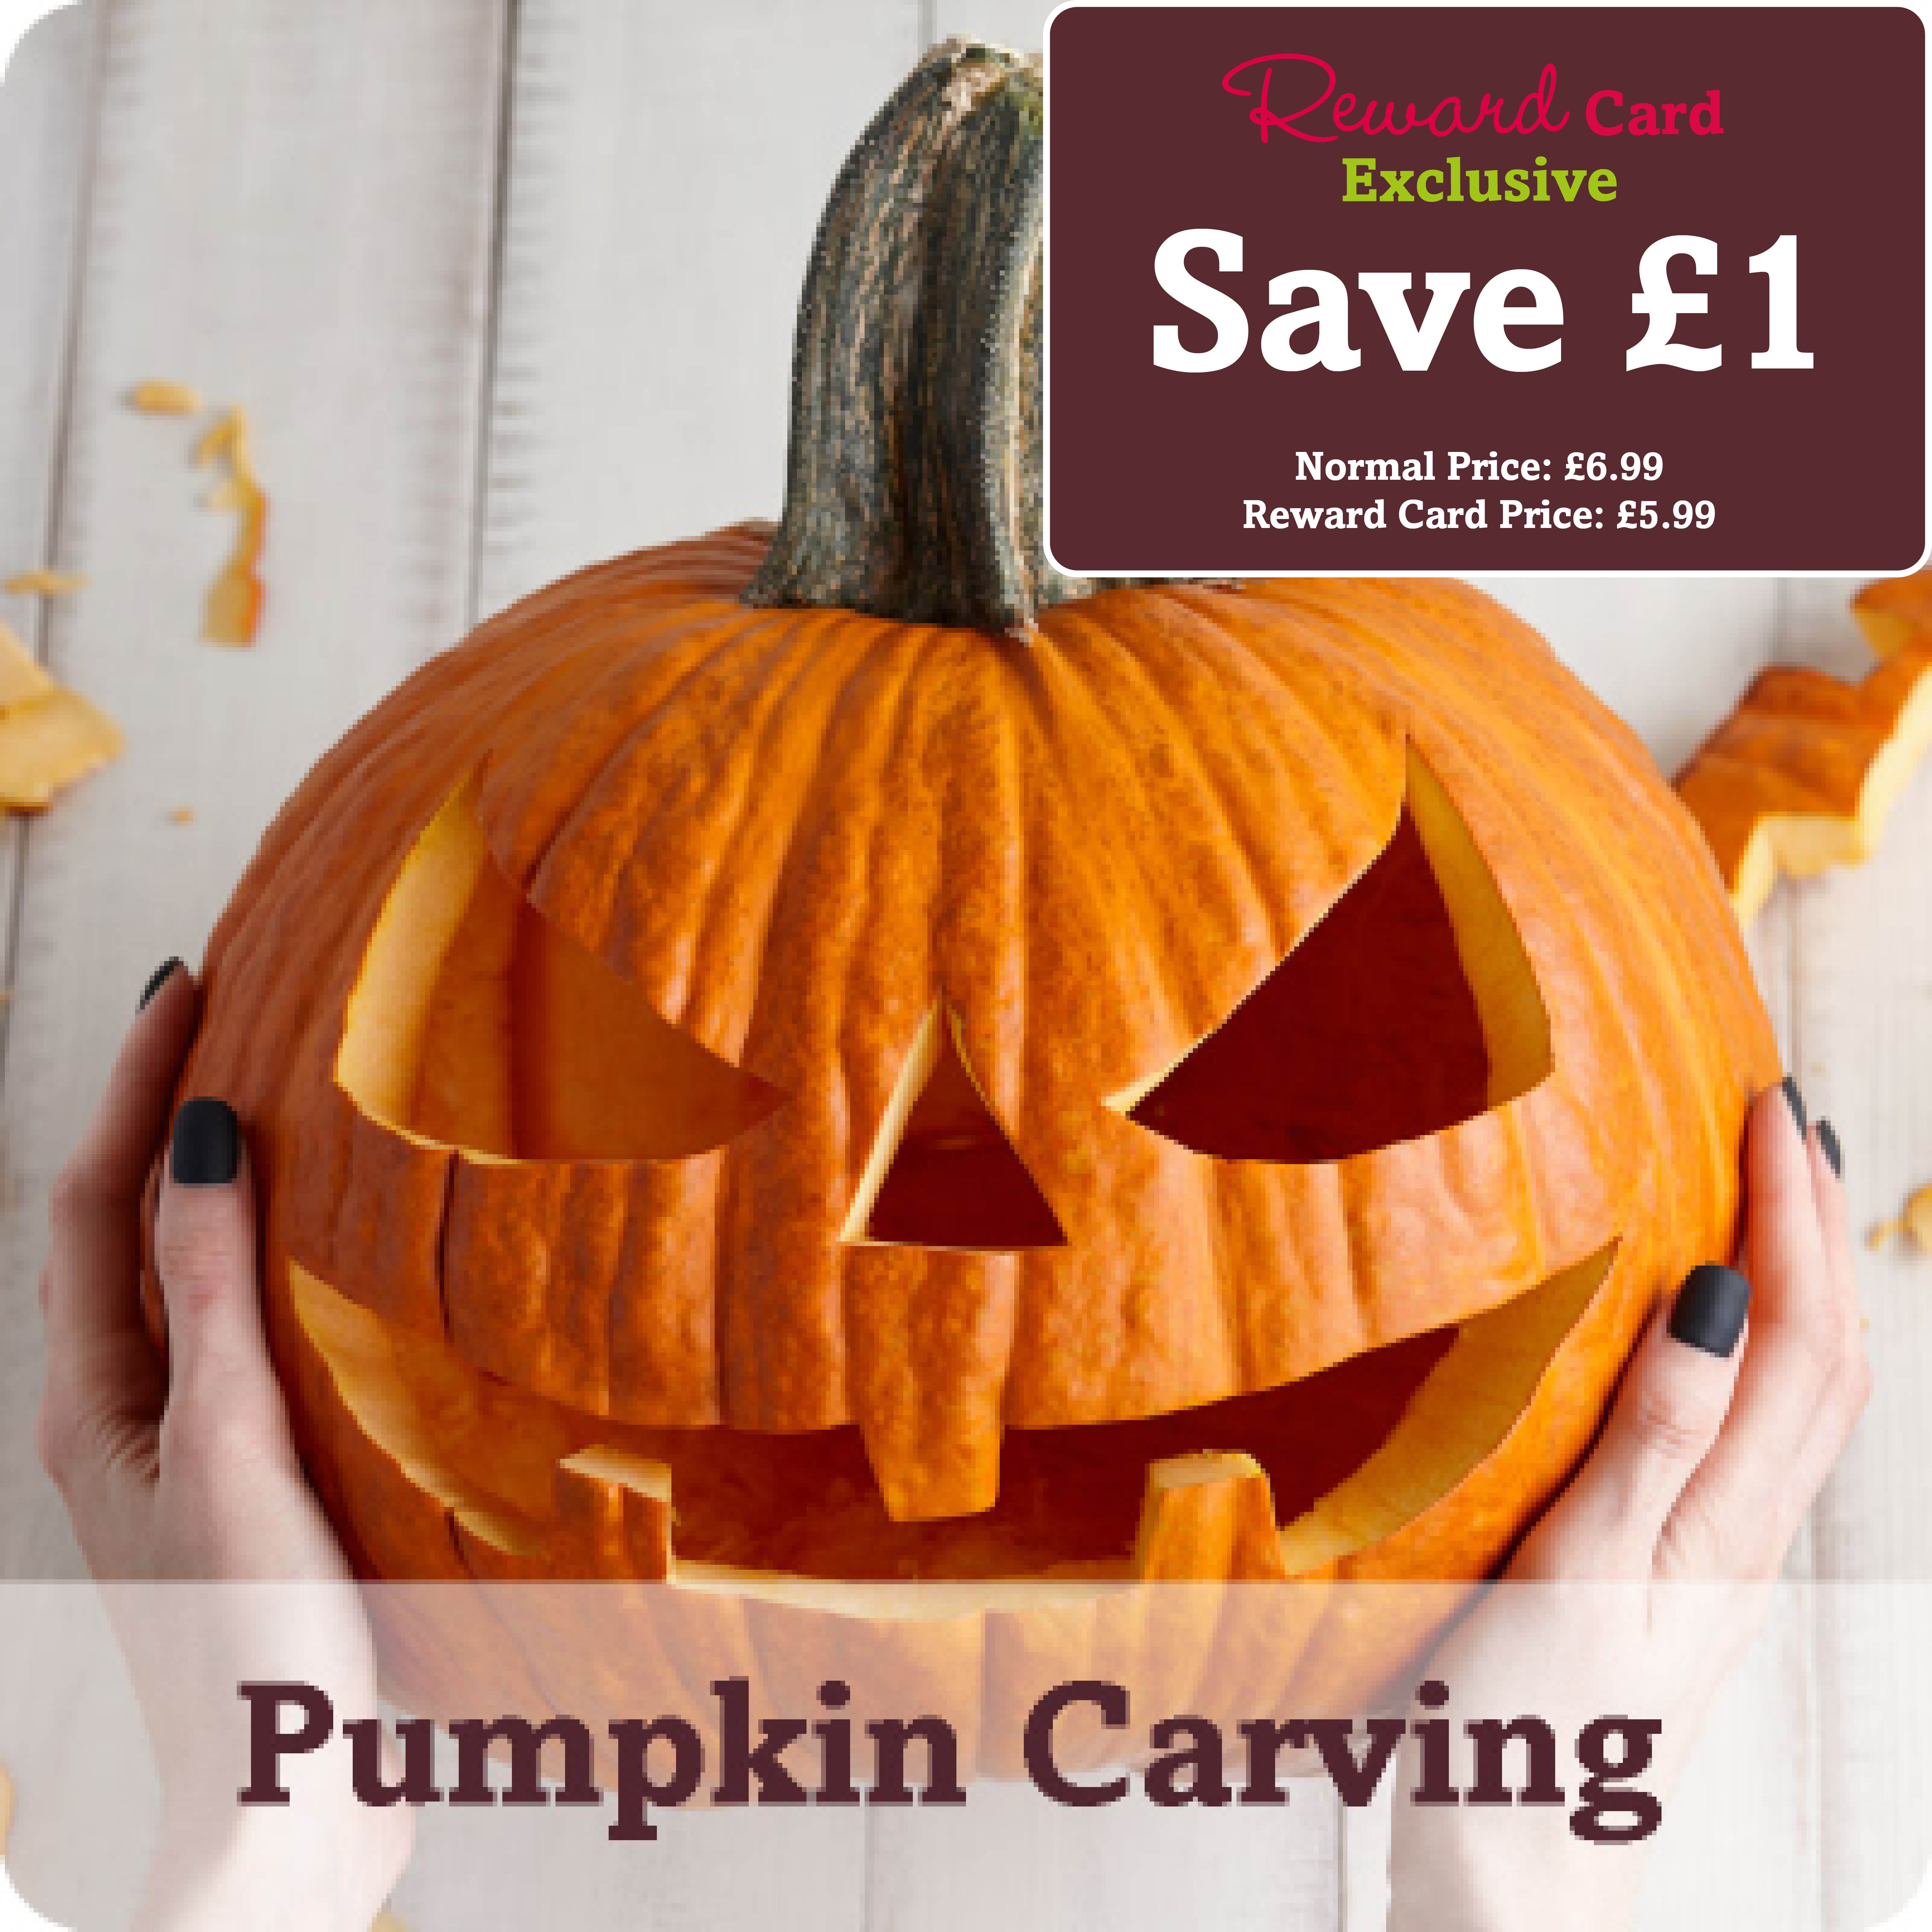 Pumpkin Carving - Beverley